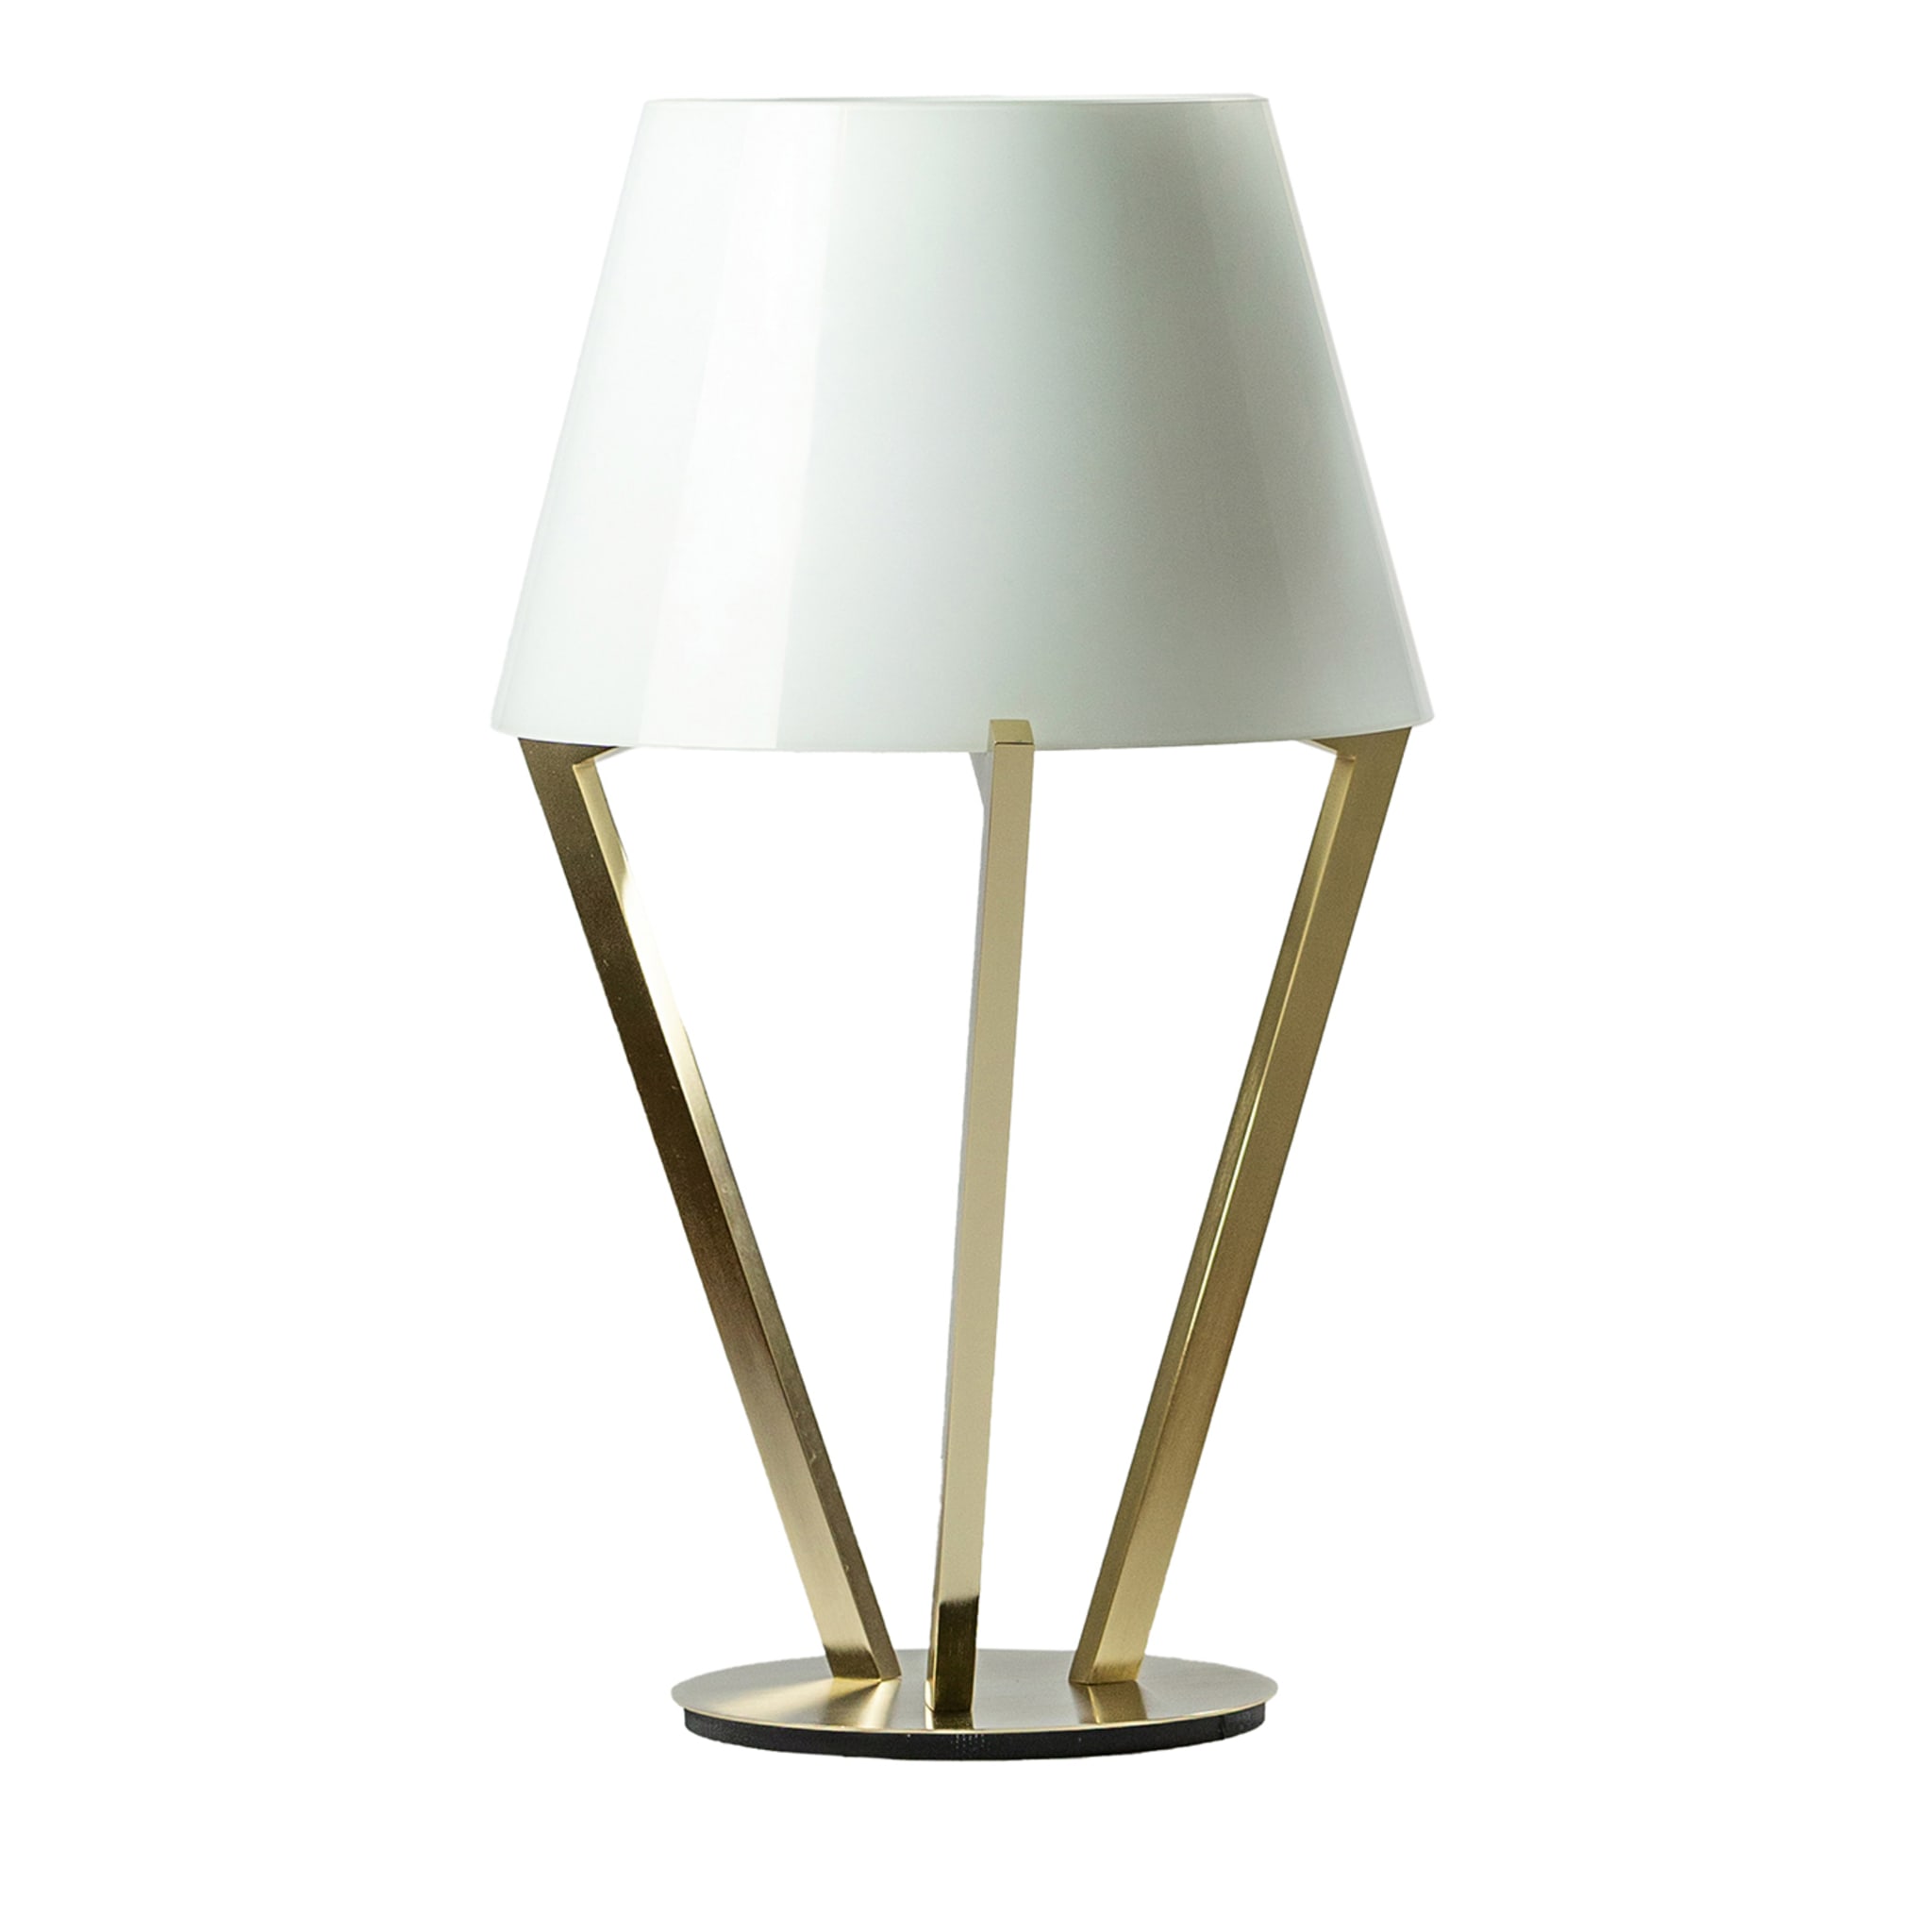 Zena Table Lamp #1 - Main view